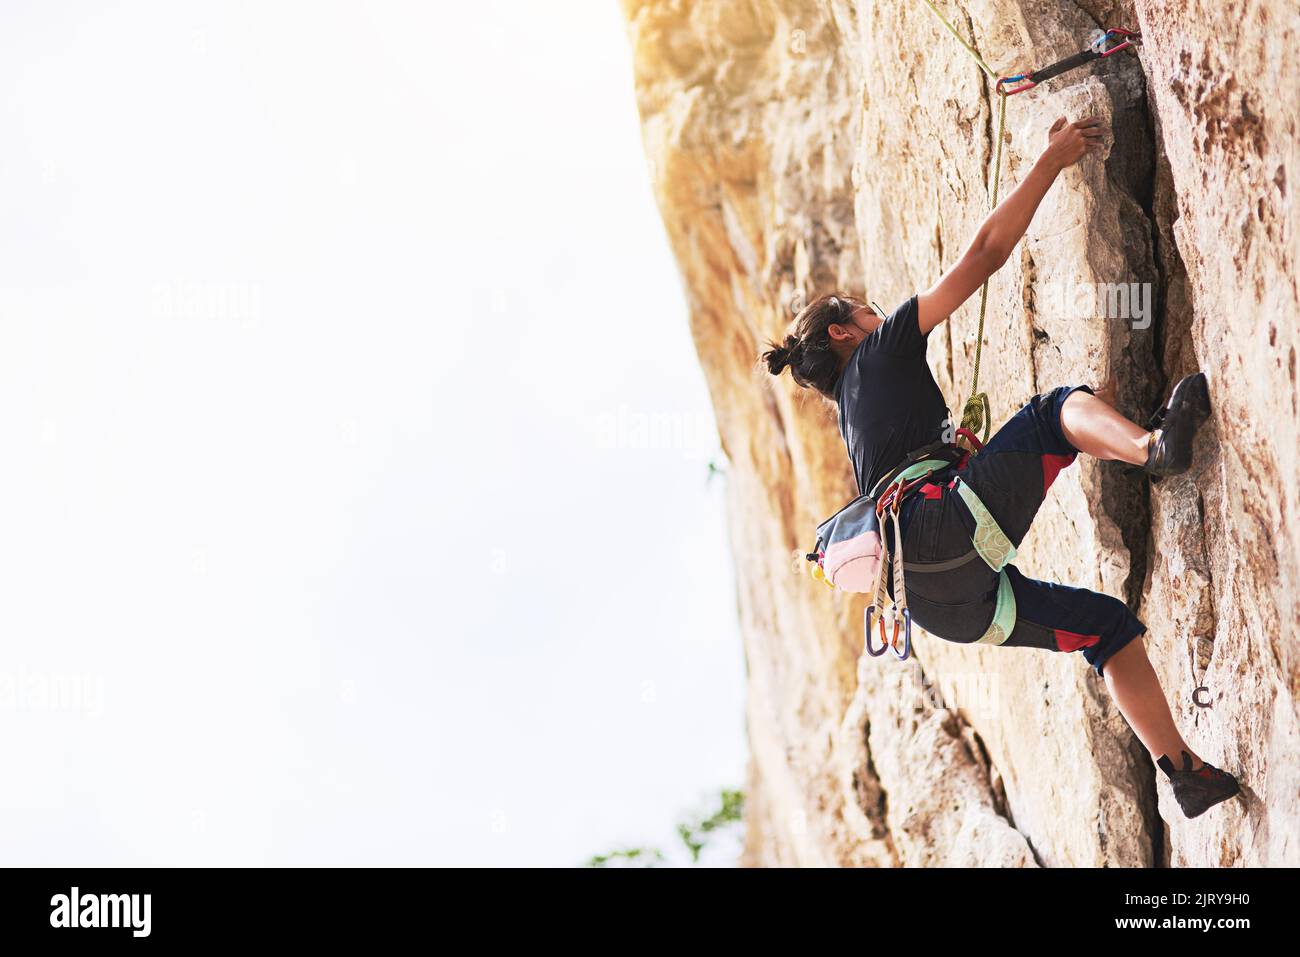 Halten Sie nicht an, bis Sie den Gipfel erreichen. Ein junger Kletterer, der eine Felswand bestieckt. Stockfoto